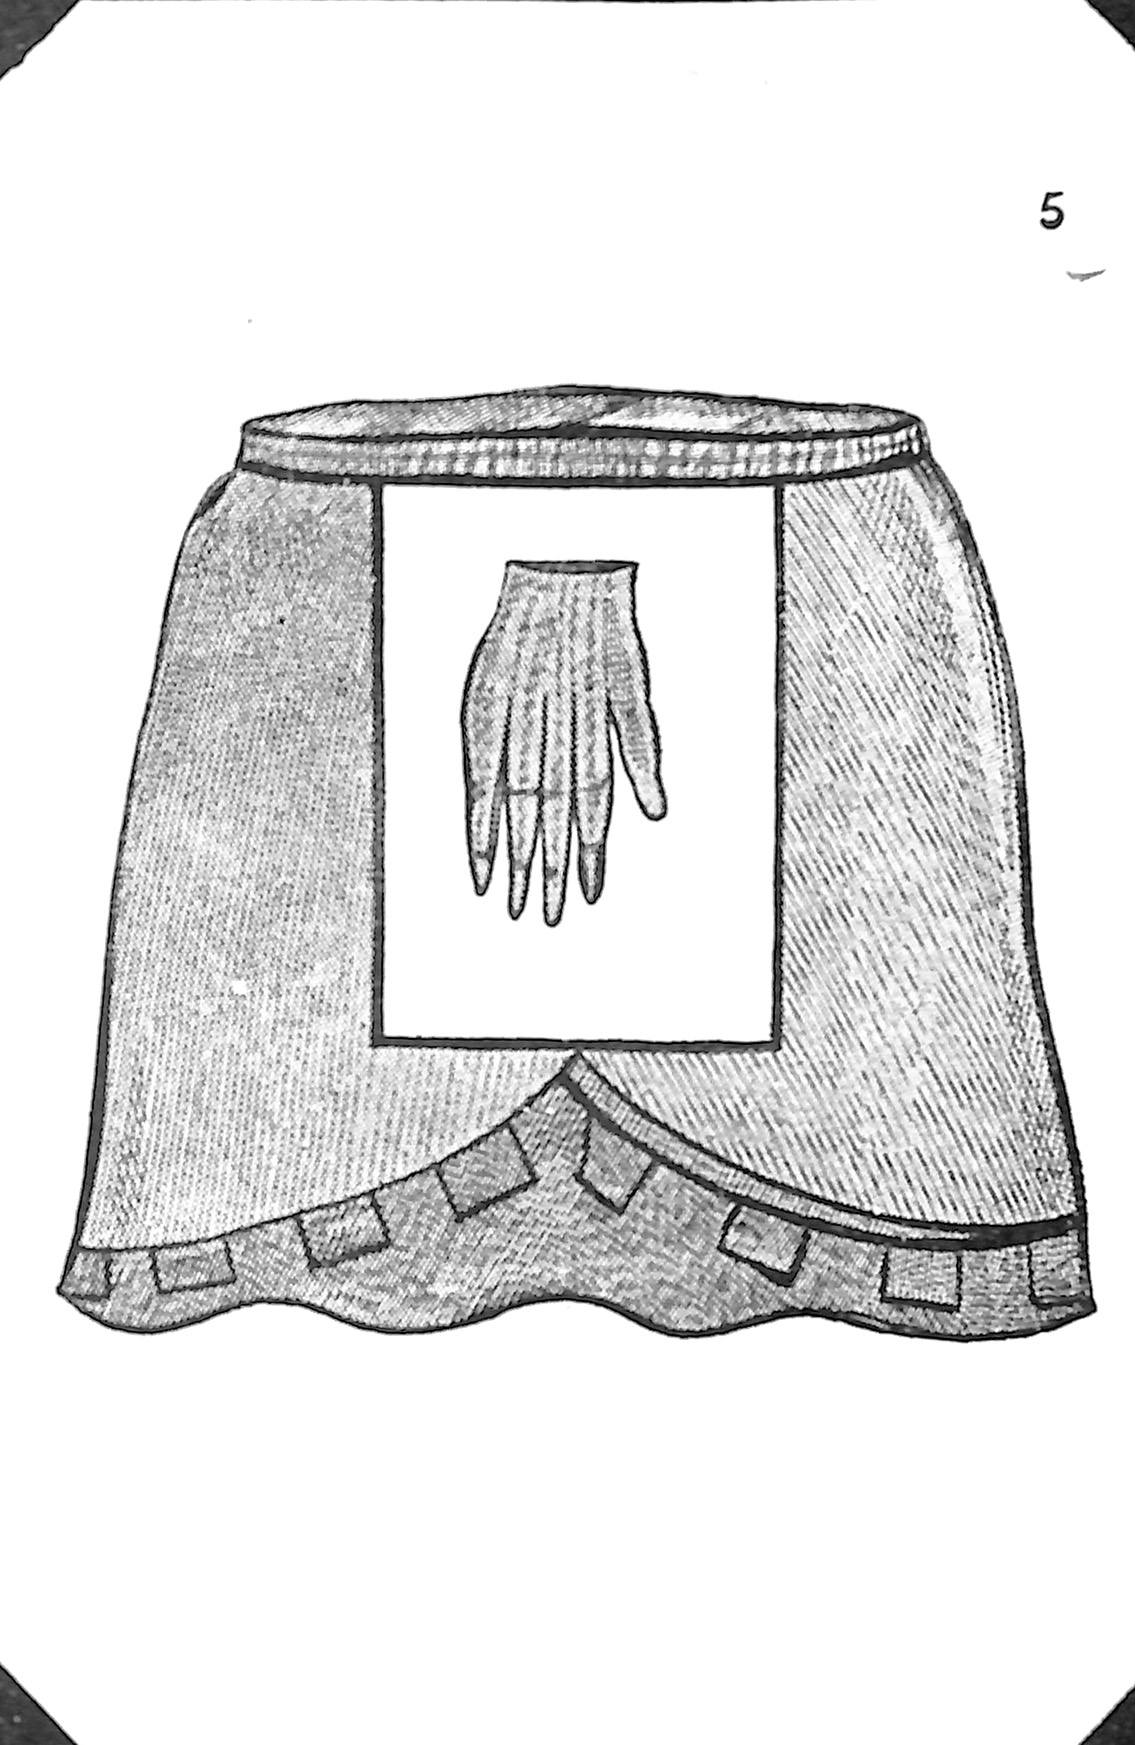 Masonic Symbols of Uxmal